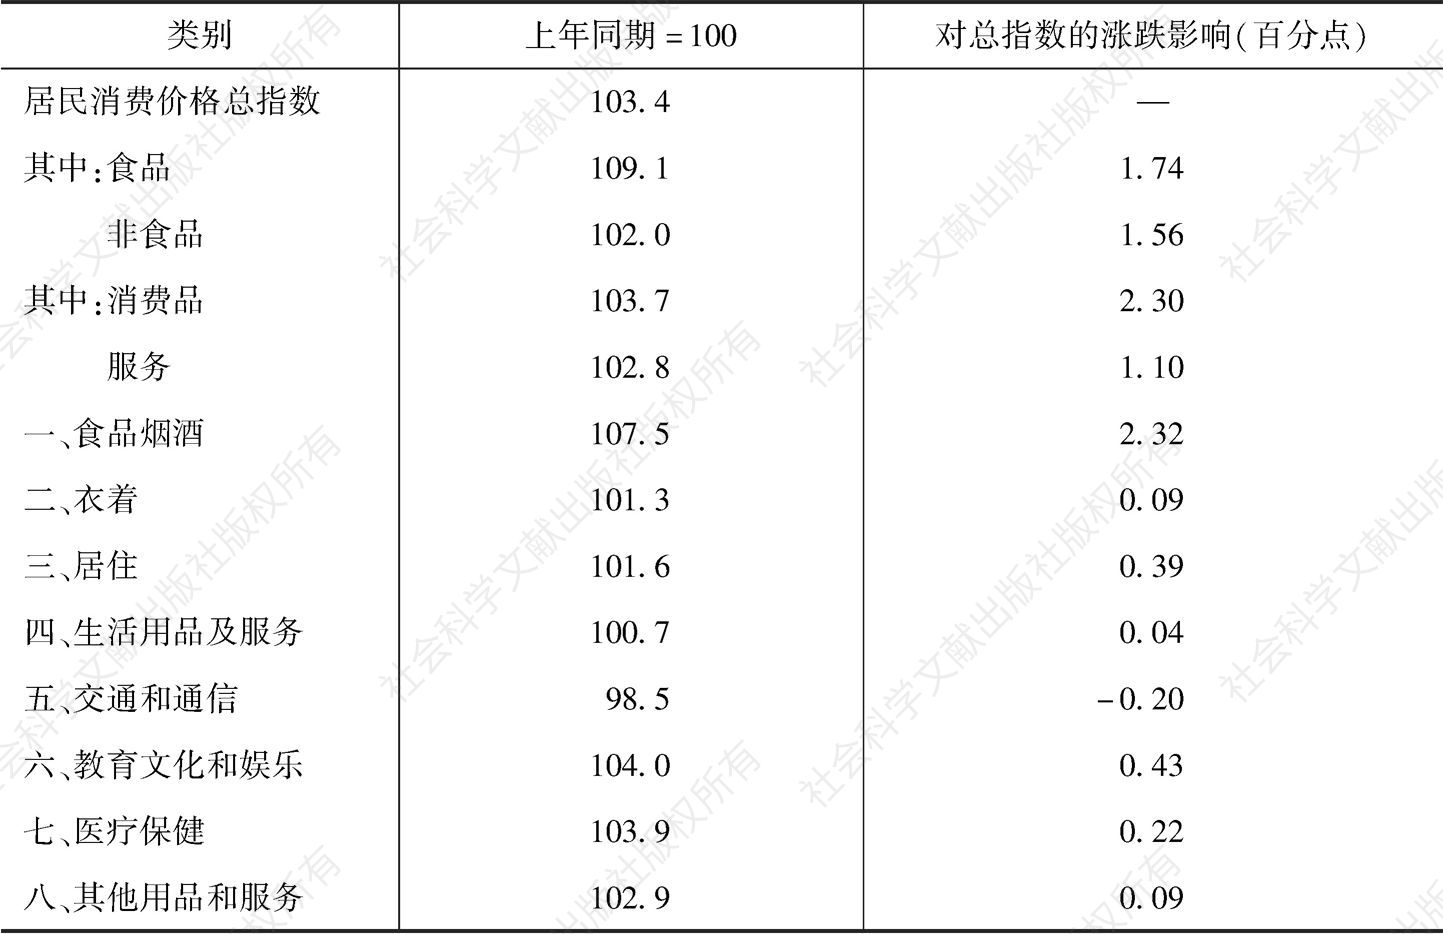 表1 2019年深圳居民消费价格分类指数及涨跌幅构成